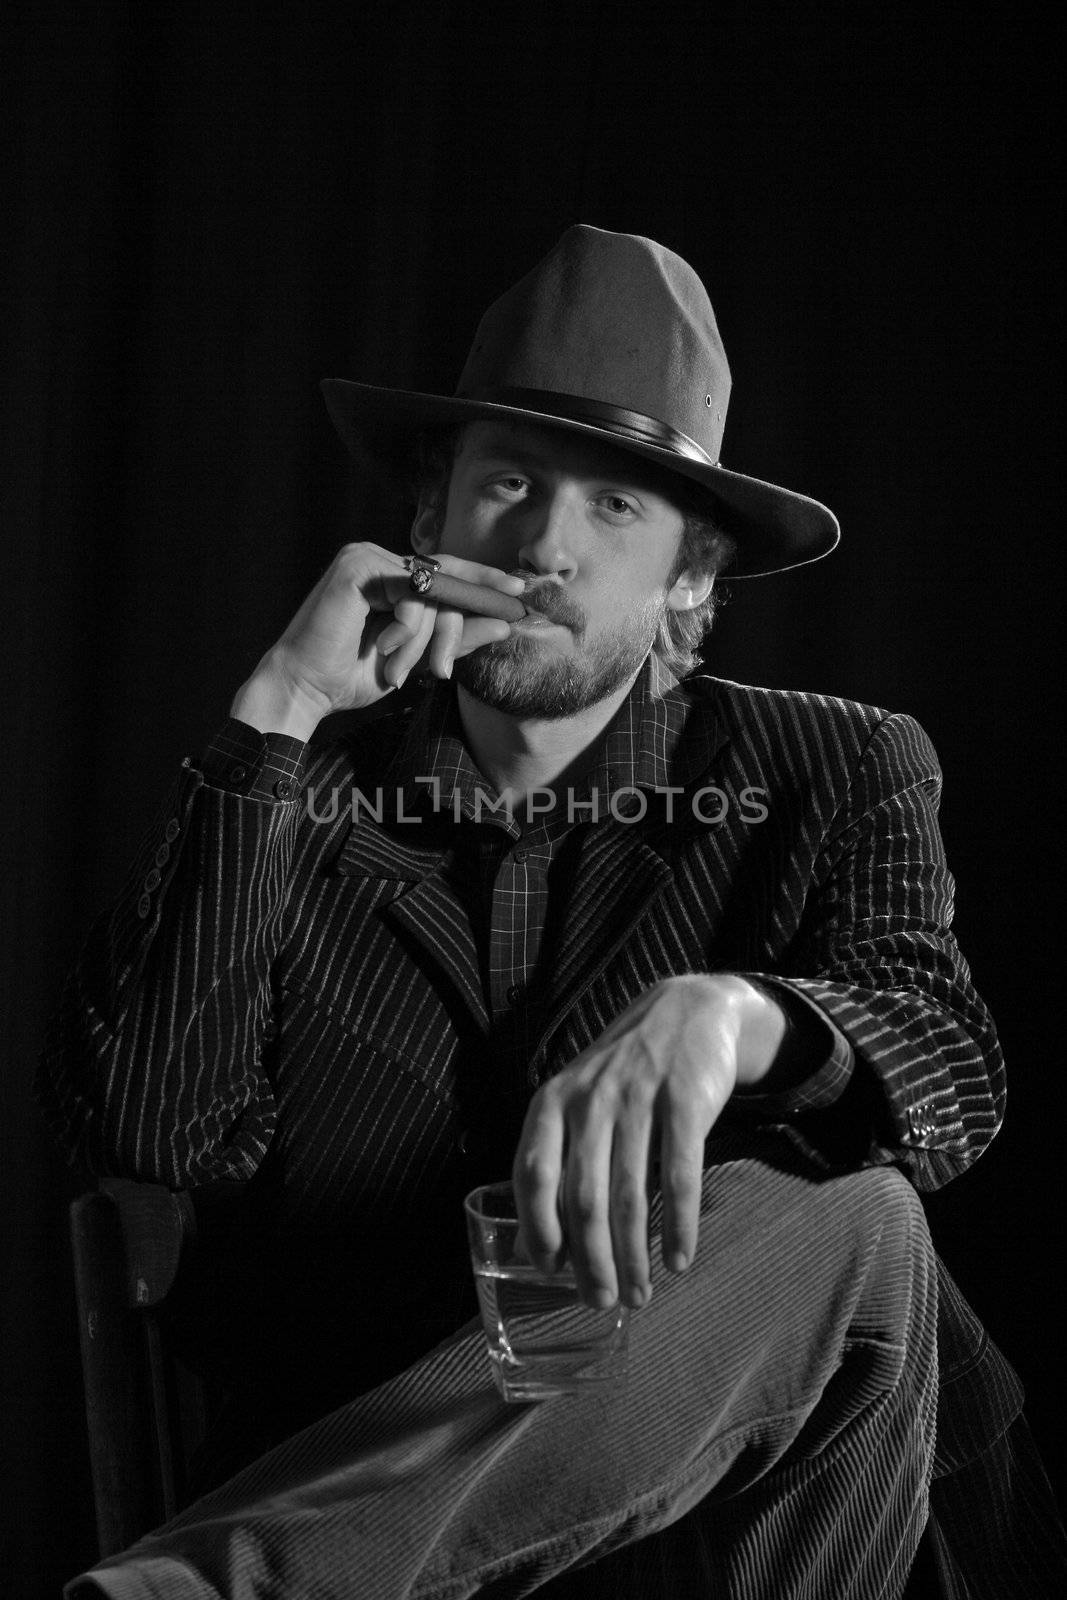 An image of a bearded man smoking cigar